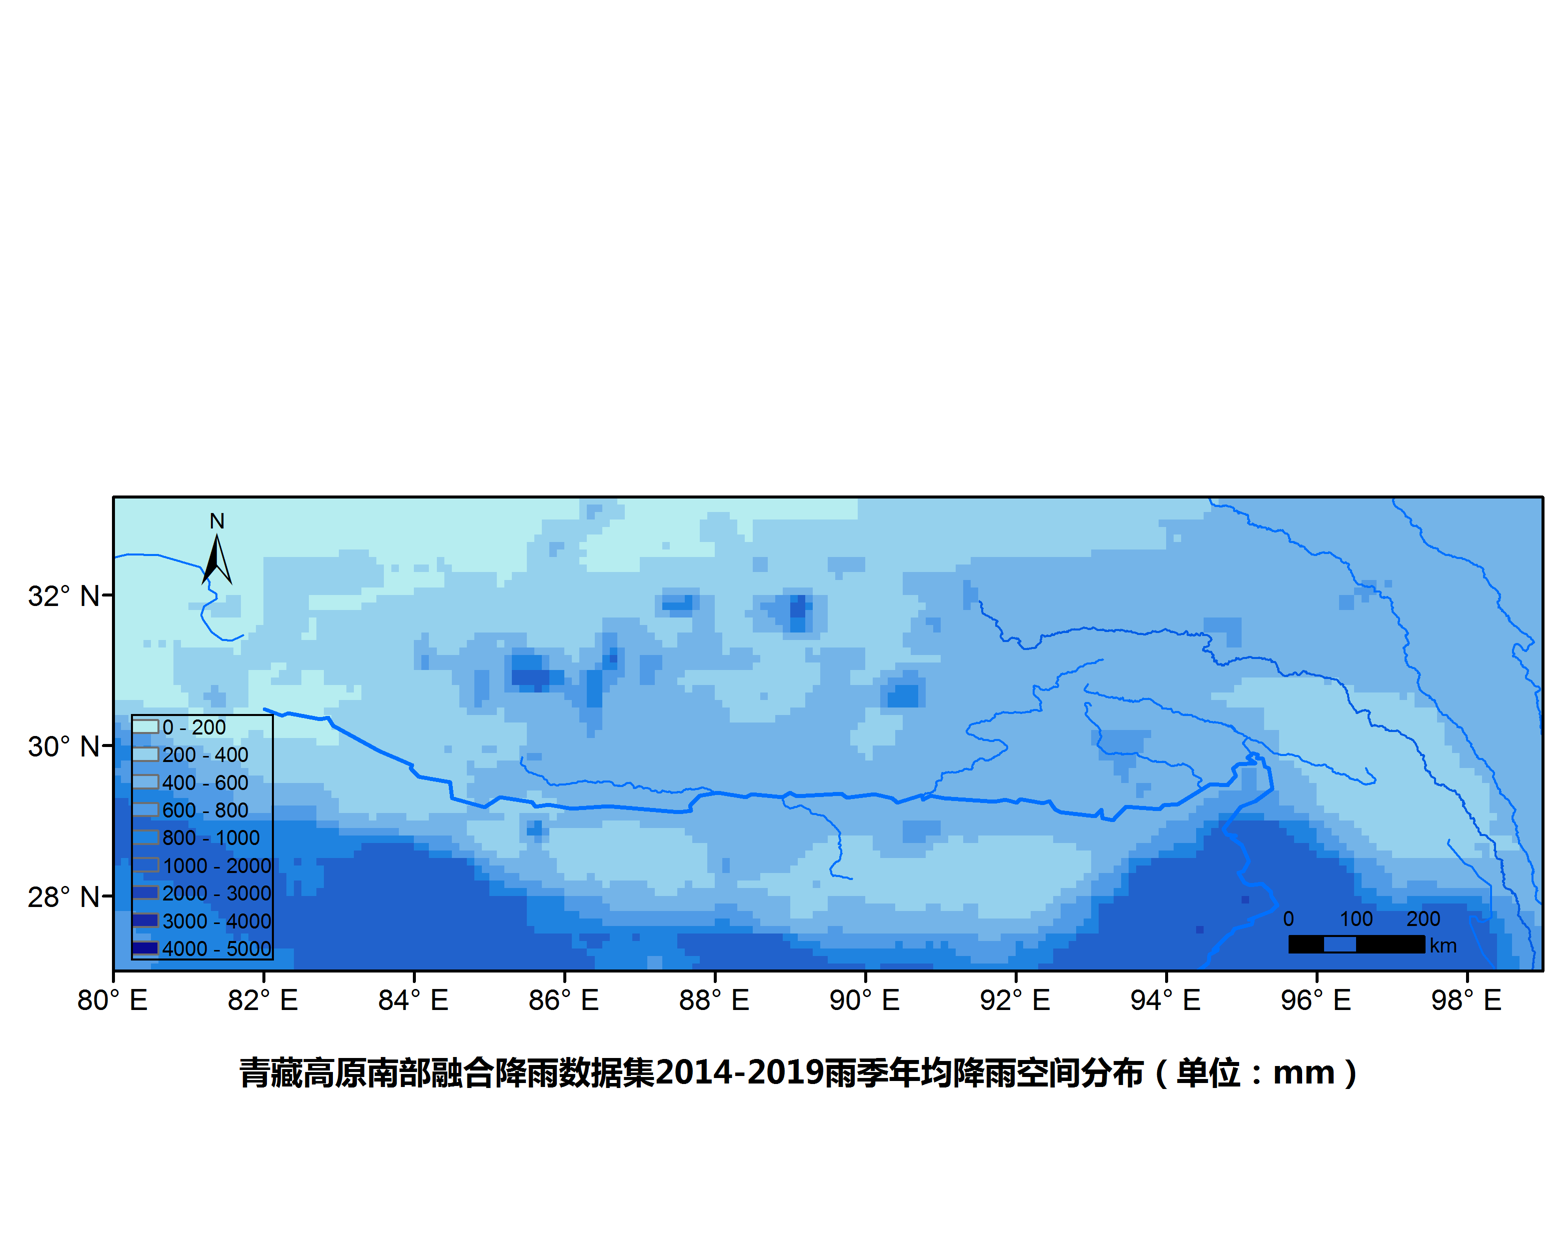 青藏高原南部卫星与地面站融合降雨数据集（2014-2019雨季）